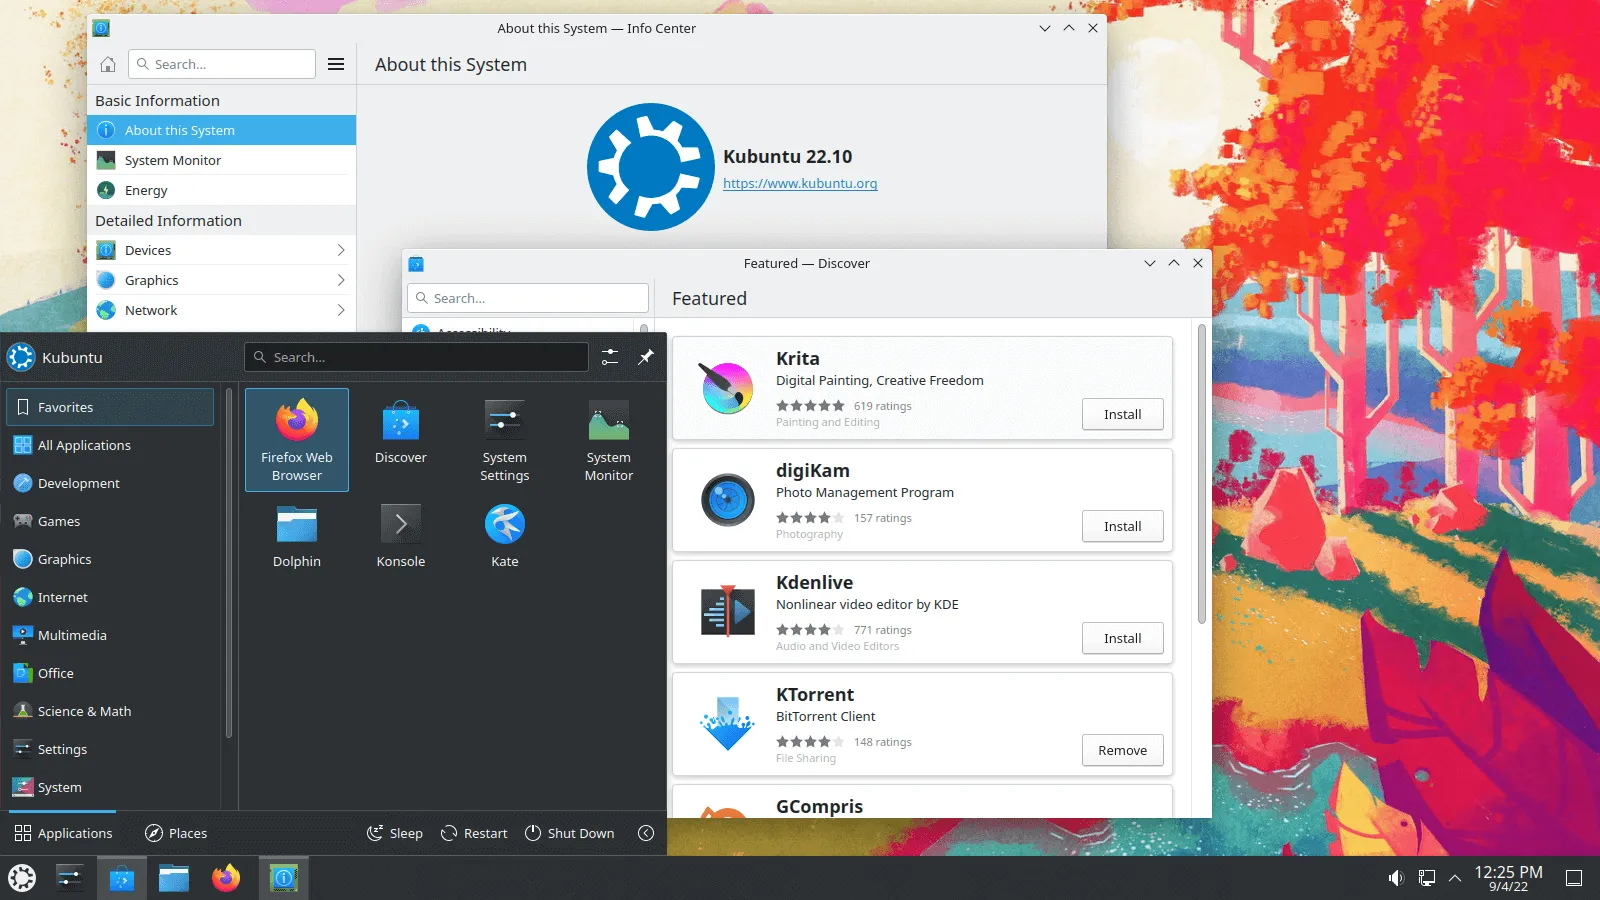 KDE Plasma asztal 5.25 Kubuntu 22.10 verziójára telepítve